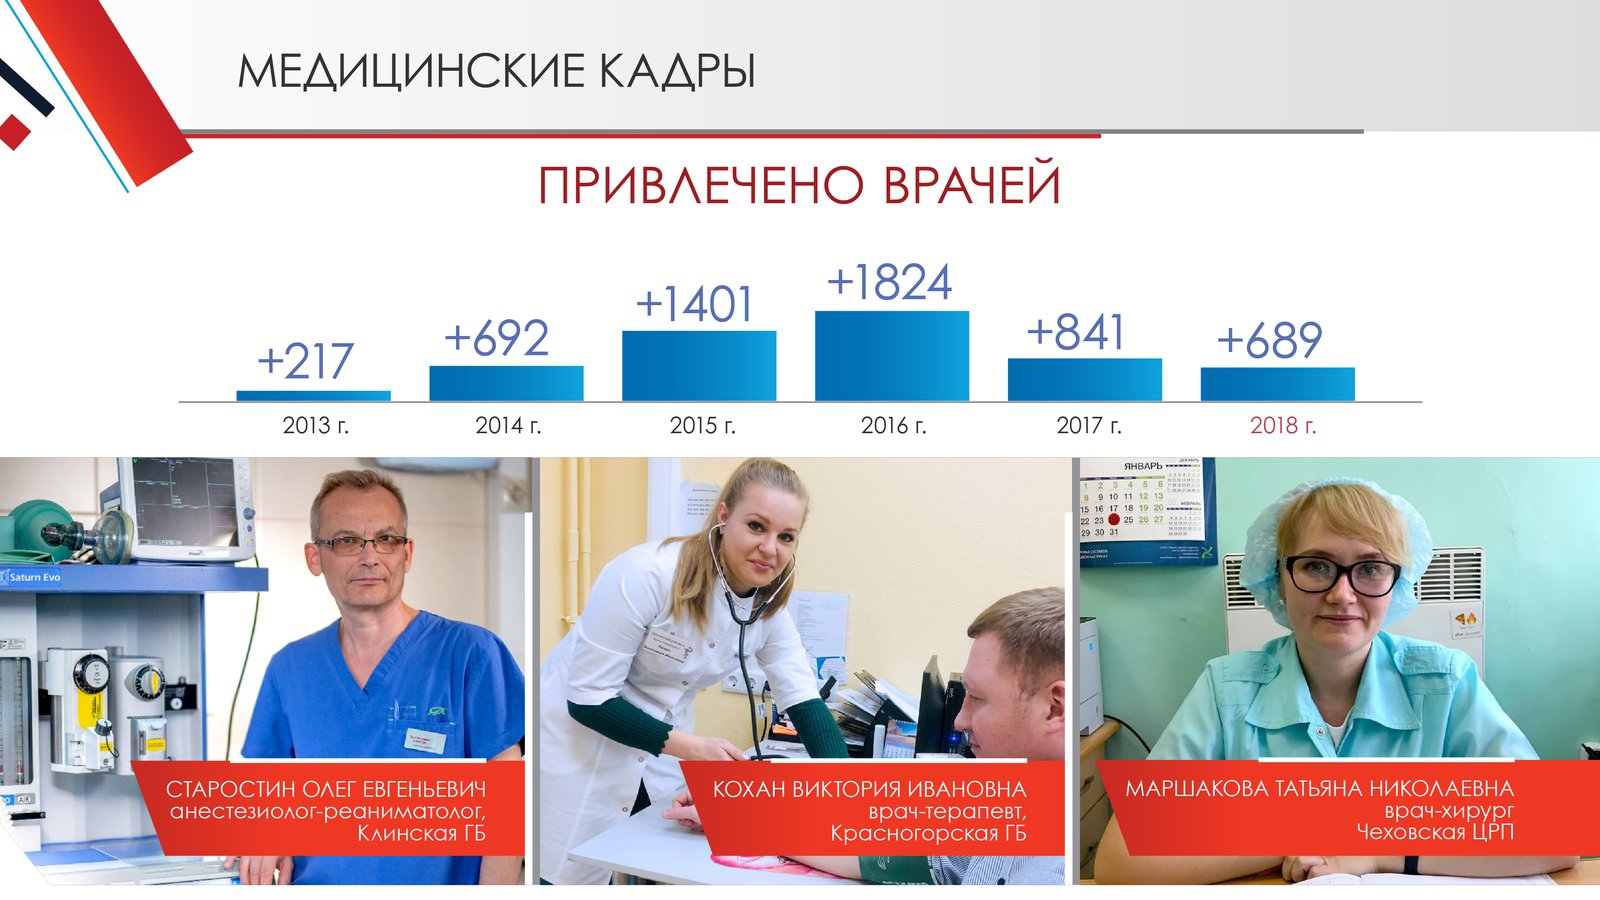 Андрей Воробьев губернатор московской области - Здравоохранение. Дальнейшее развитие отрасли в регионе